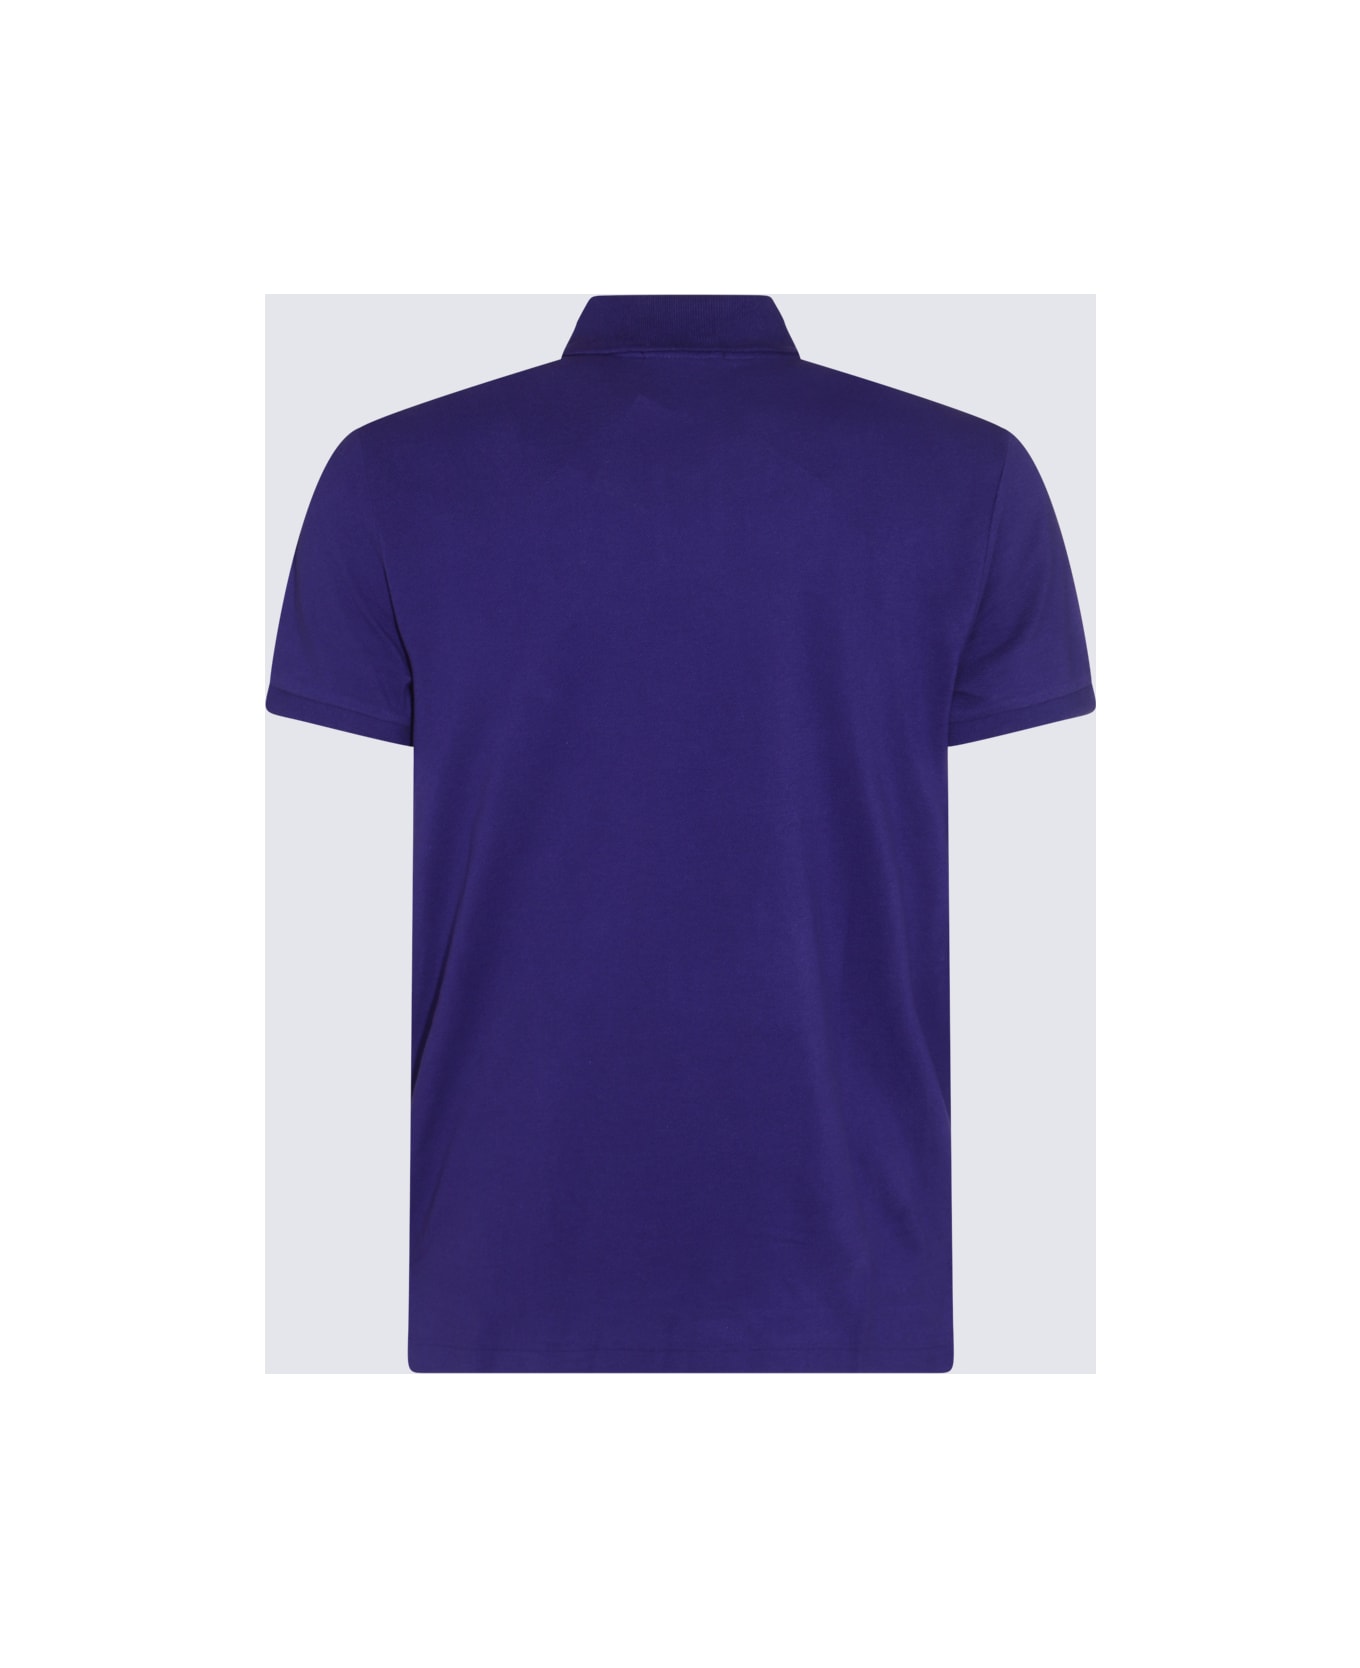 Polo Ralph Lauren Purple Cotton Polo Shirt - CHALET PURPLE ポロシャツ